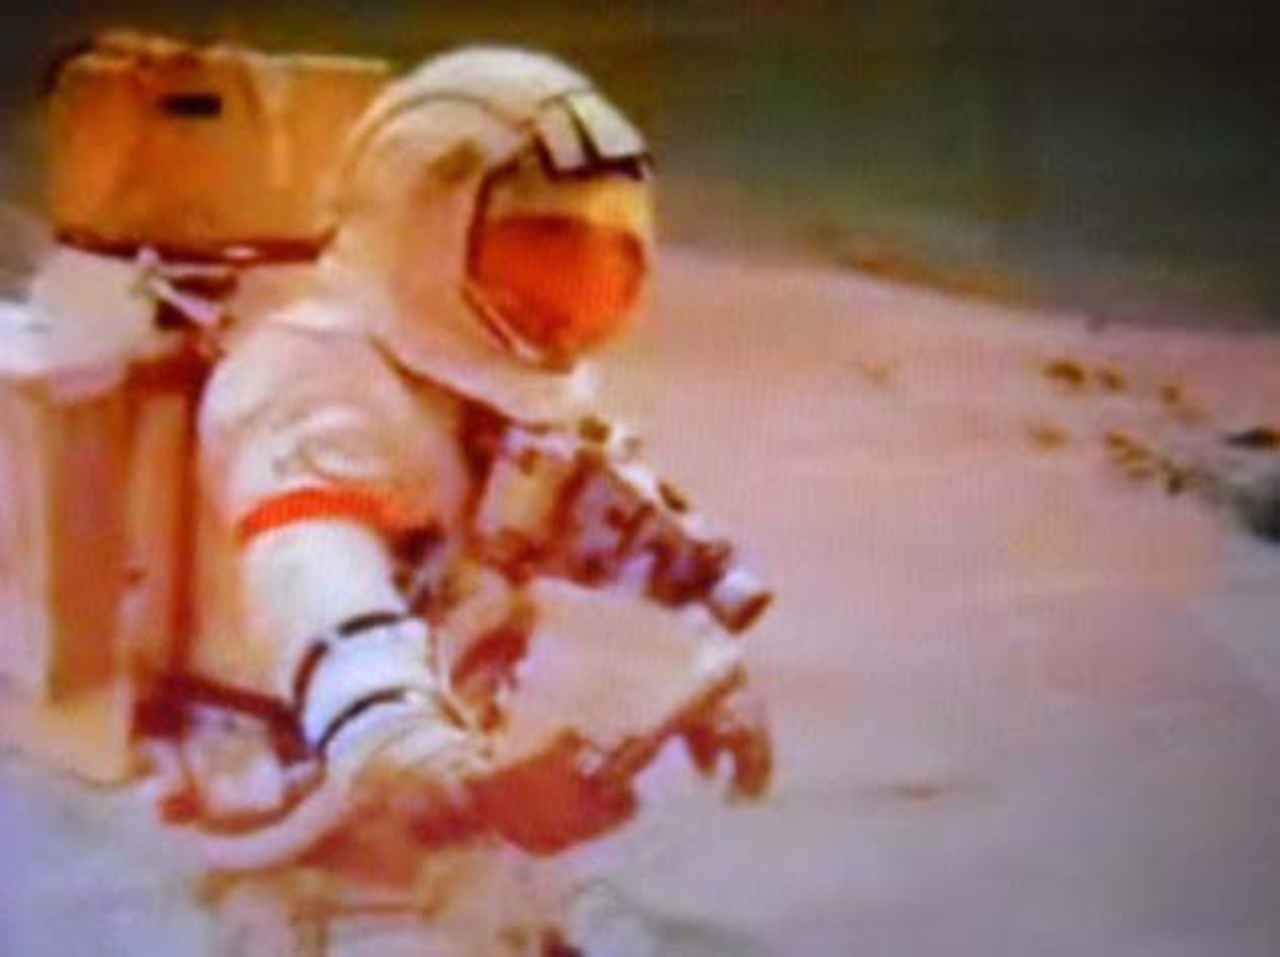 00 Programa espacial: los humanos aterrizaron en Marte 00